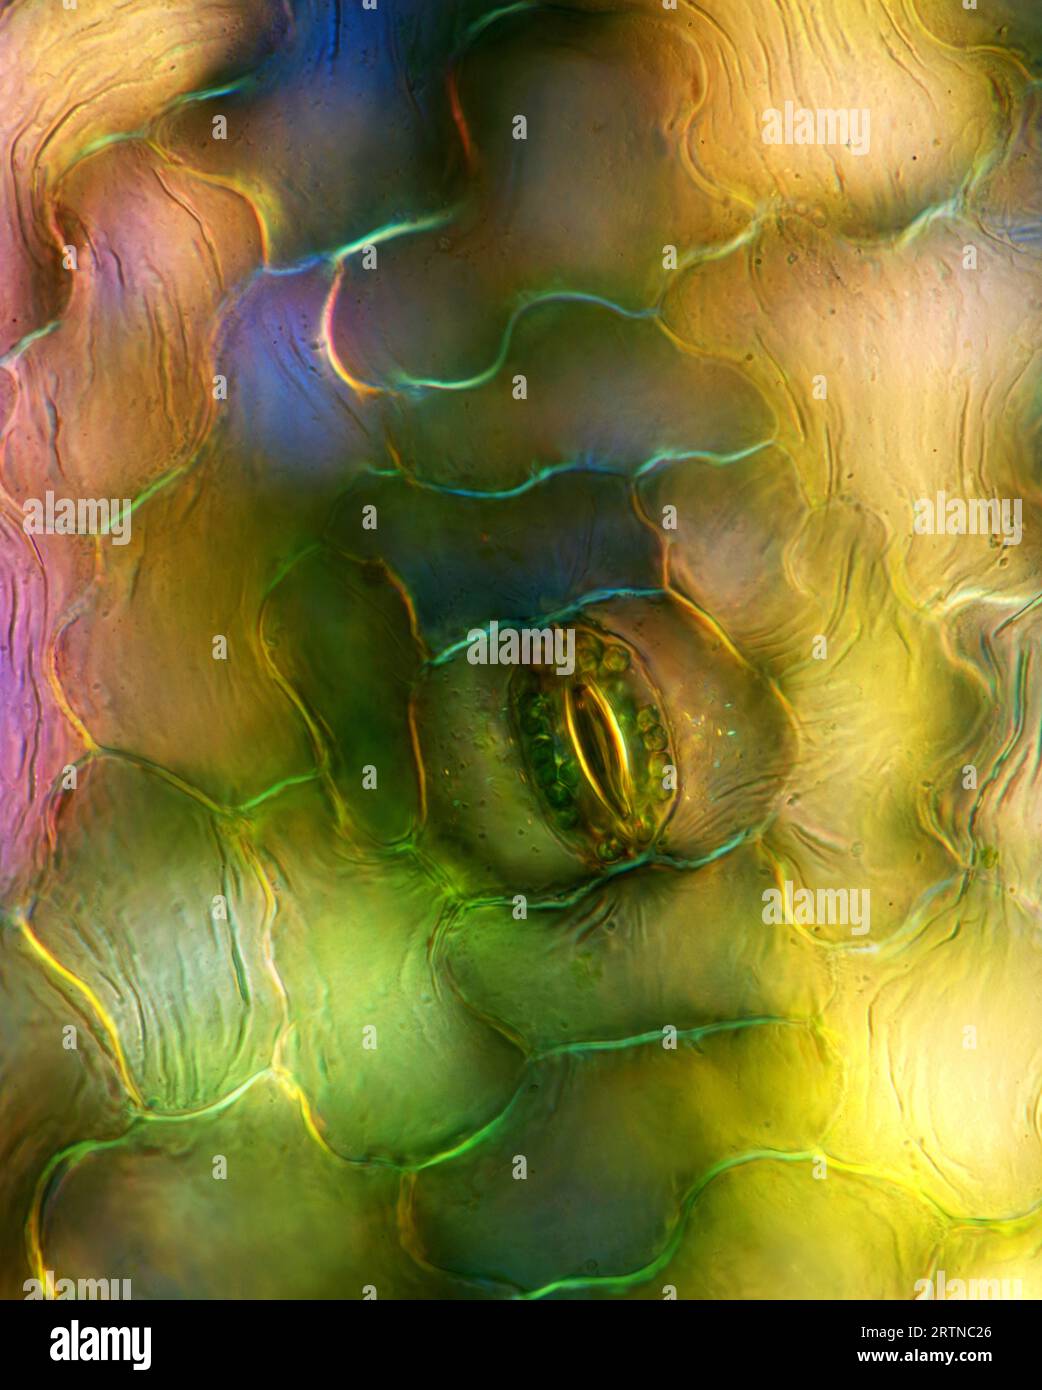 L'image présente une stomie unique dans l'épiderme foliaire de Spathiphyllum, photographiée au microscope en lumière polarisée à un grossissement de 200X. Banque D'Images